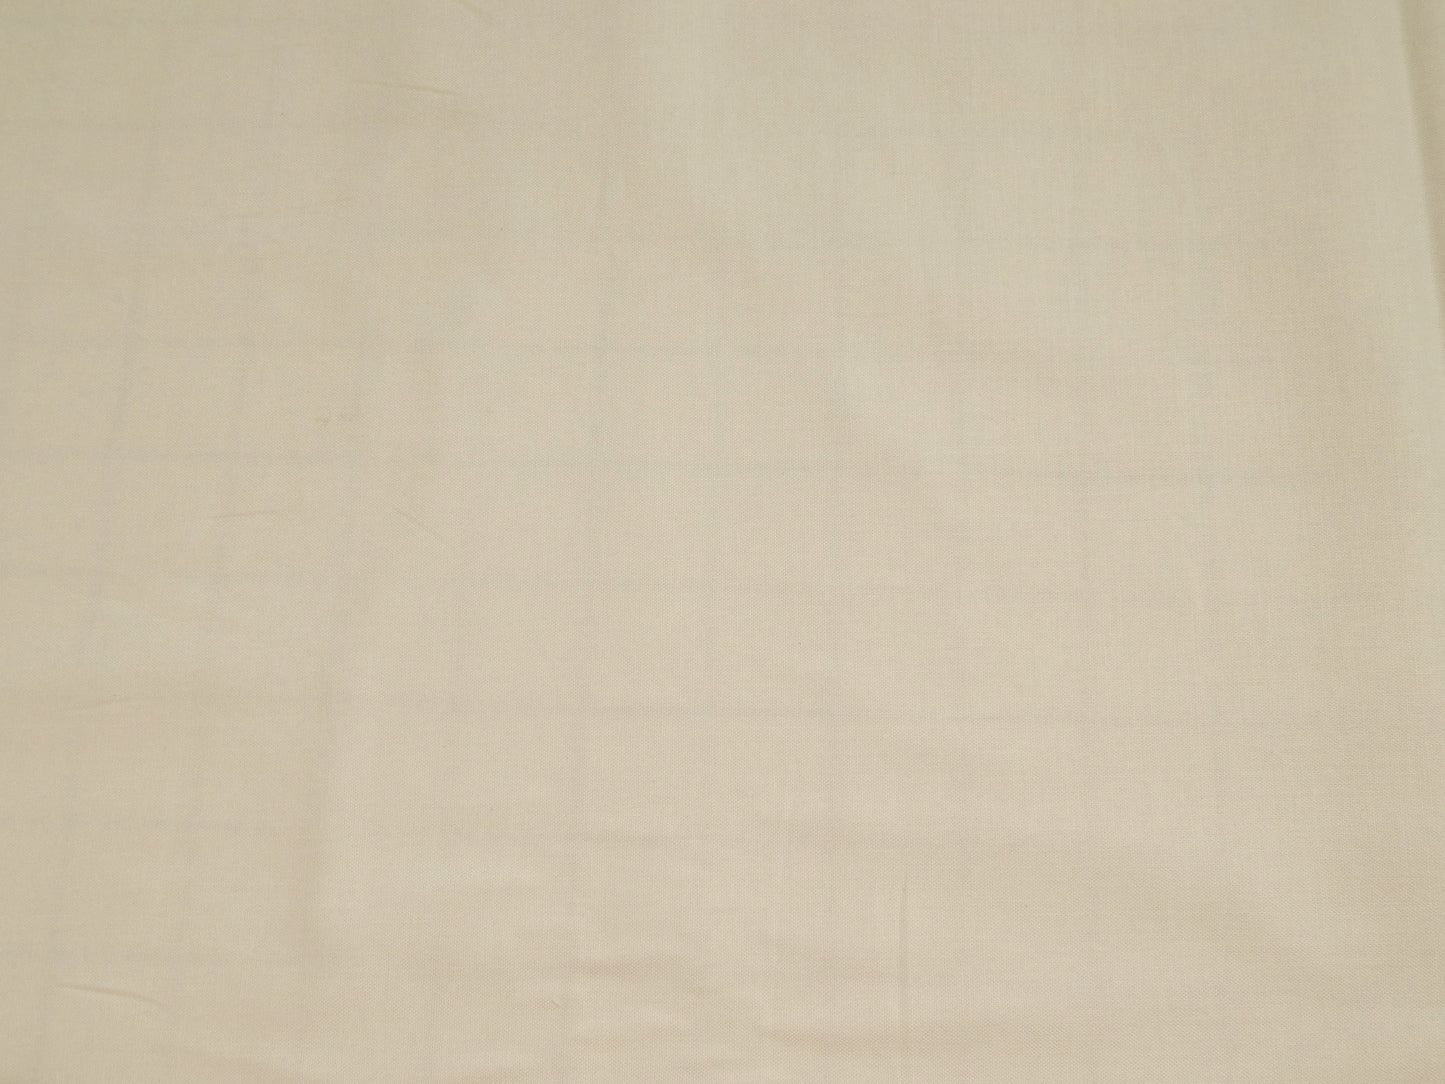 Painter's Palette Cotton Fabric - White